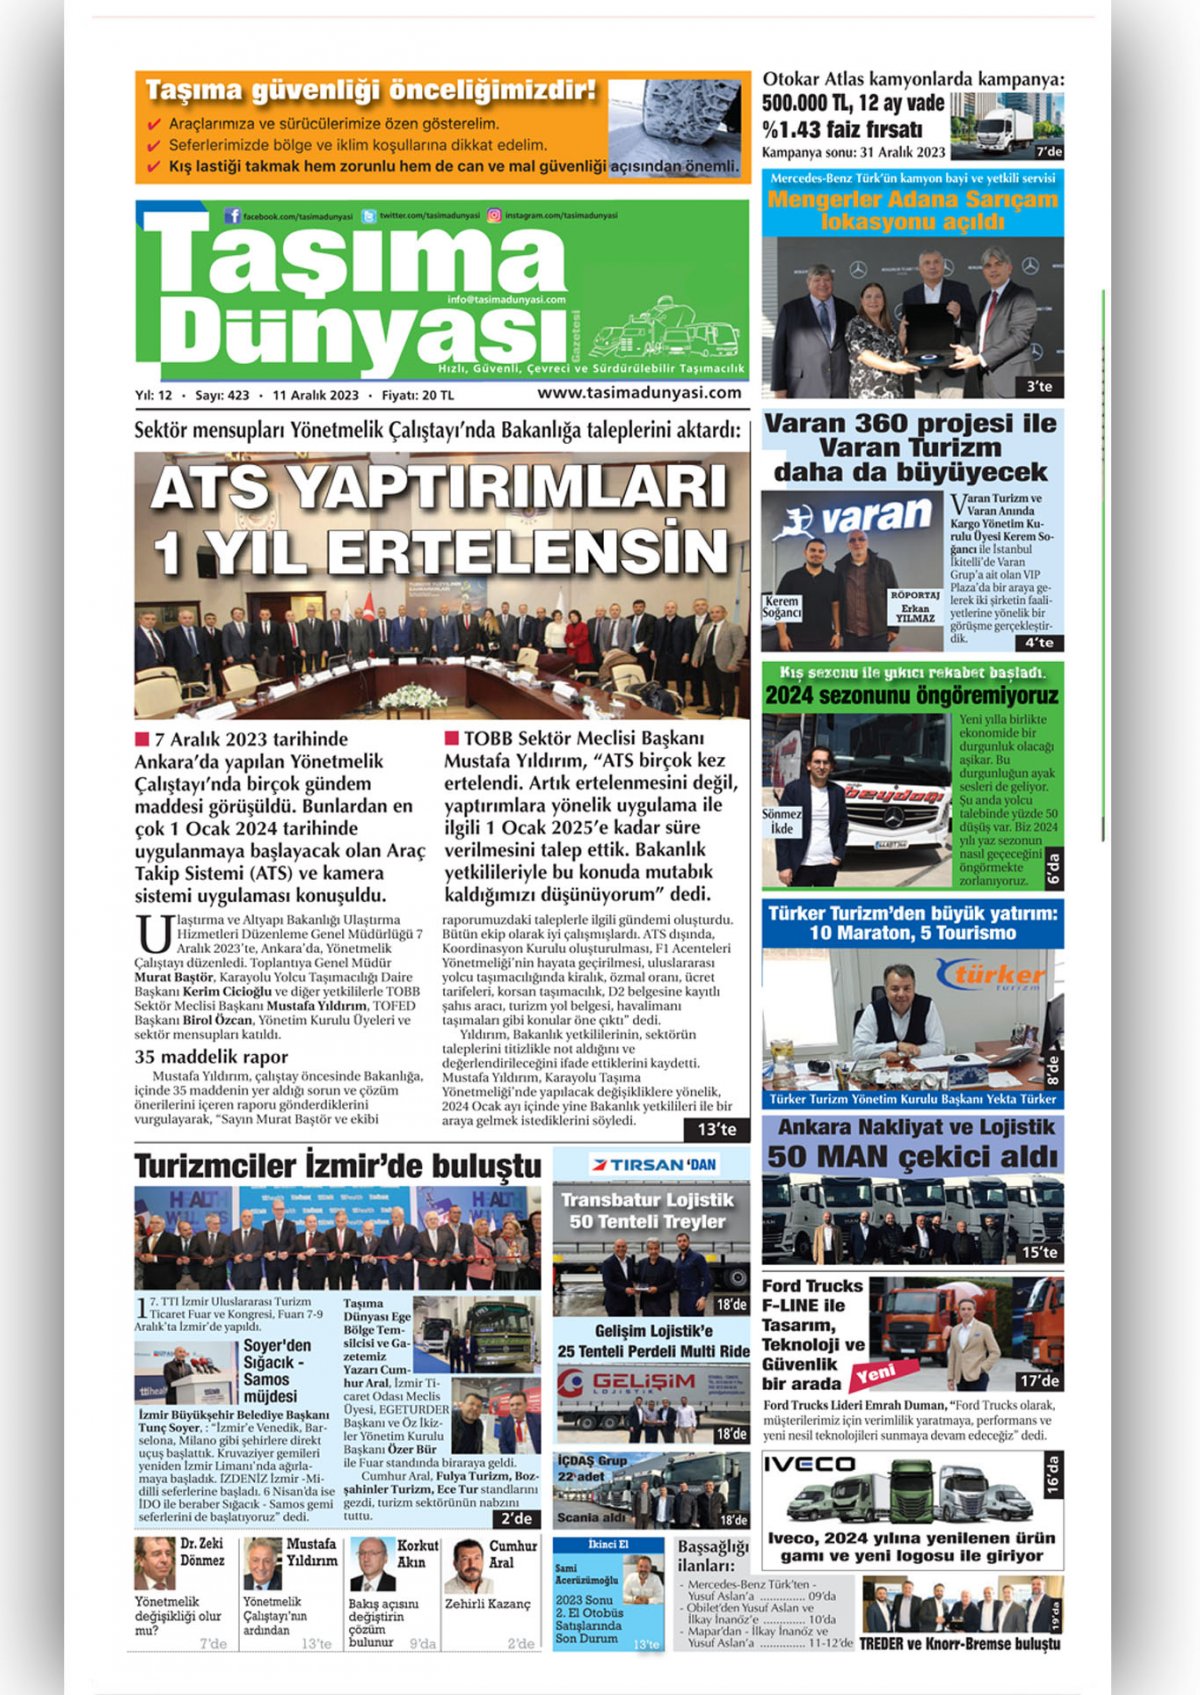 Taşıma Dünyası Gazetesi - 11.12.2023 Manşeti